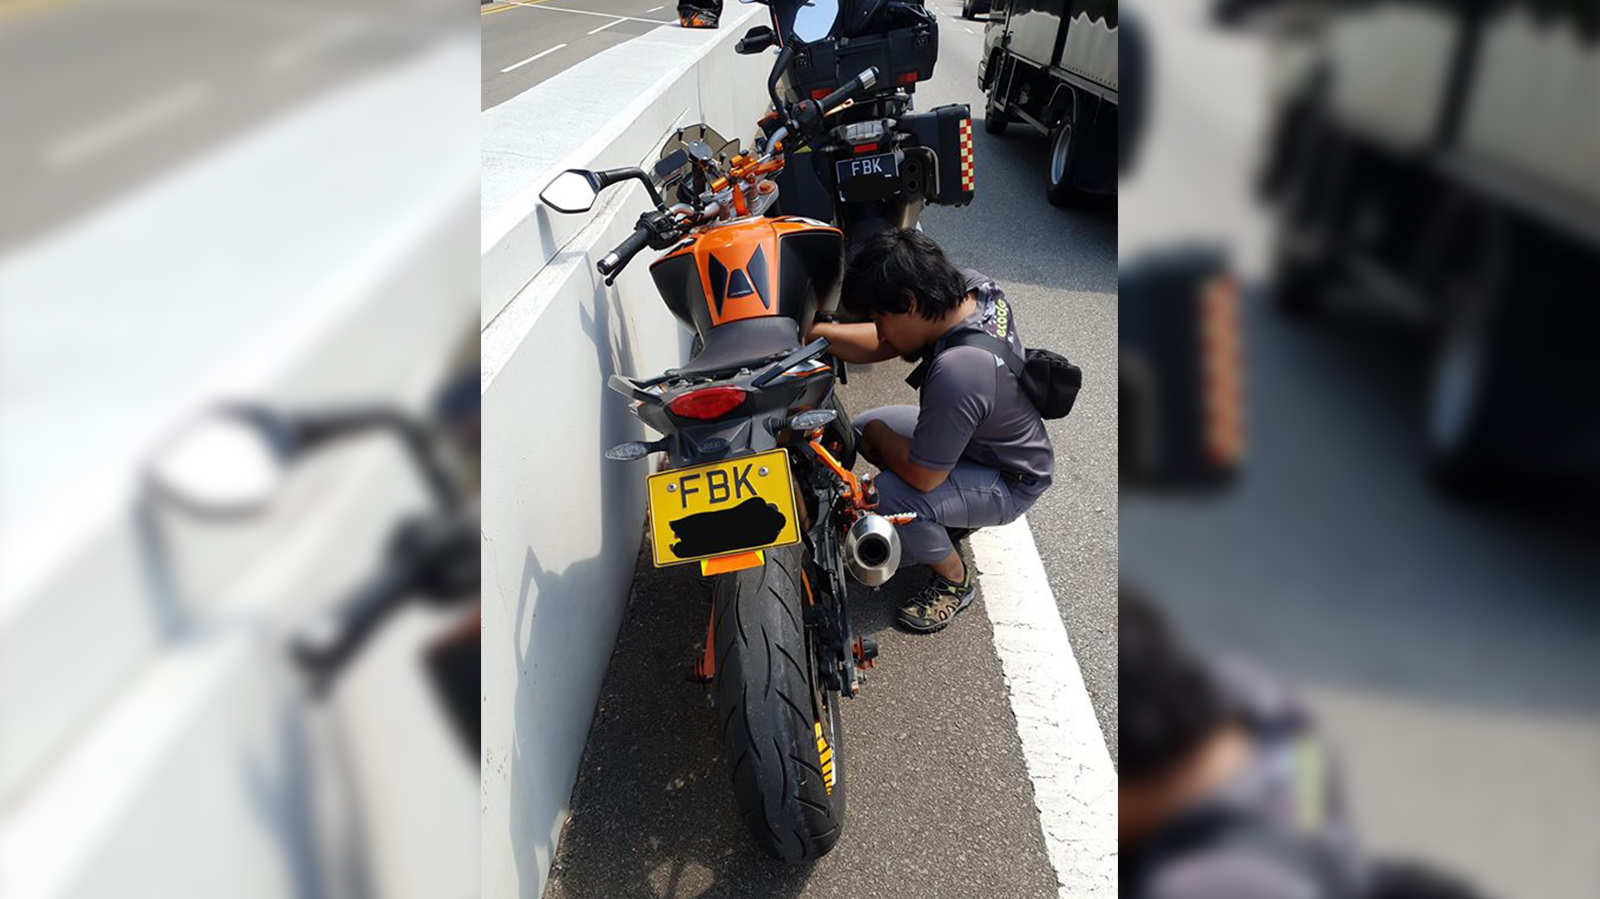 Kind BMW motorcyclist helps stricken P-plate rider